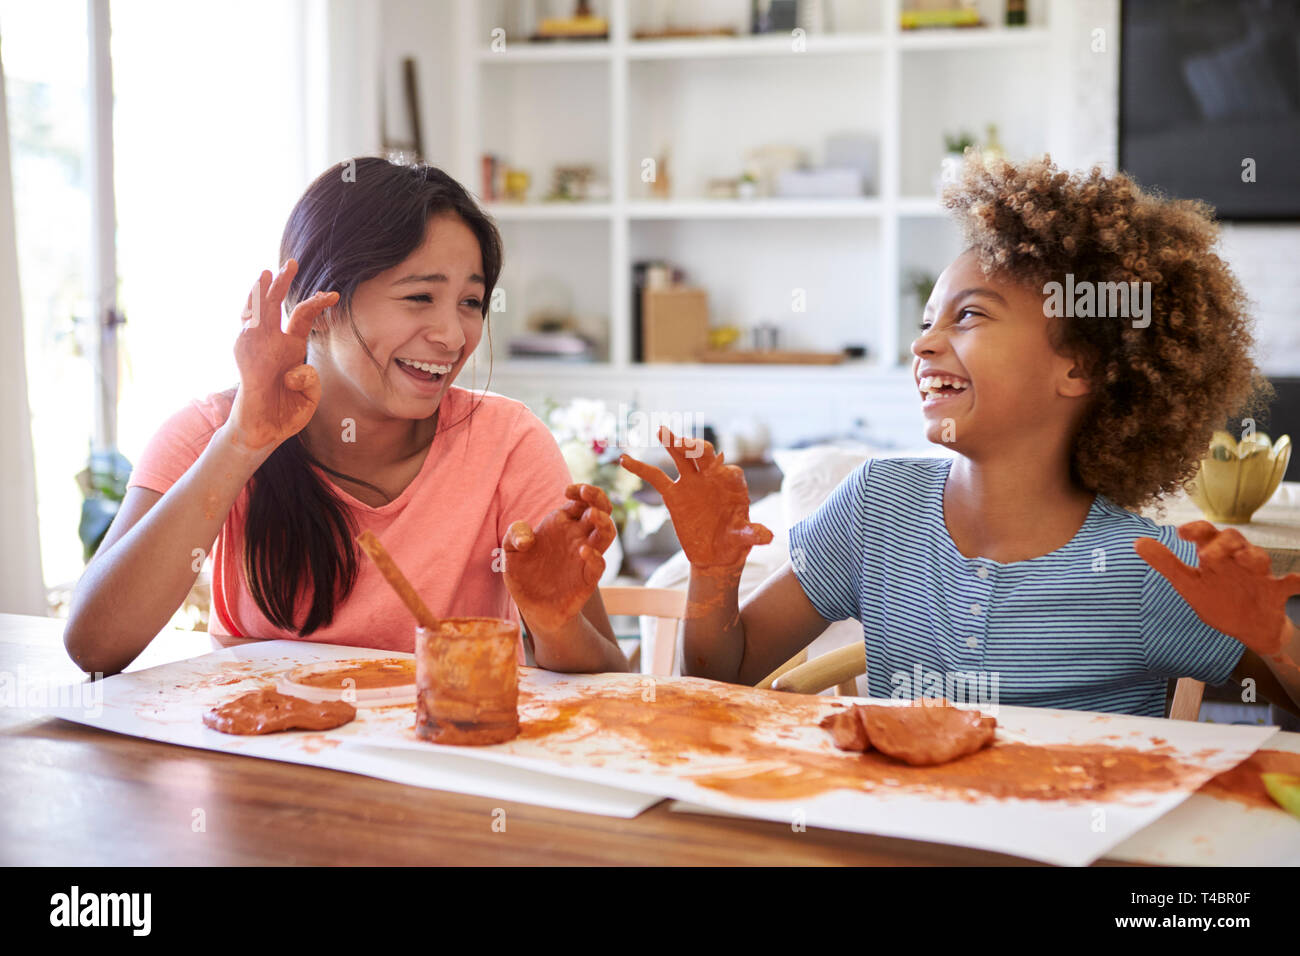 Deux copines s'amusant à jouer avec de la pâte à modeler à la maison, riant et montrant leurs mains sales à l'autre, Close up Banque D'Images